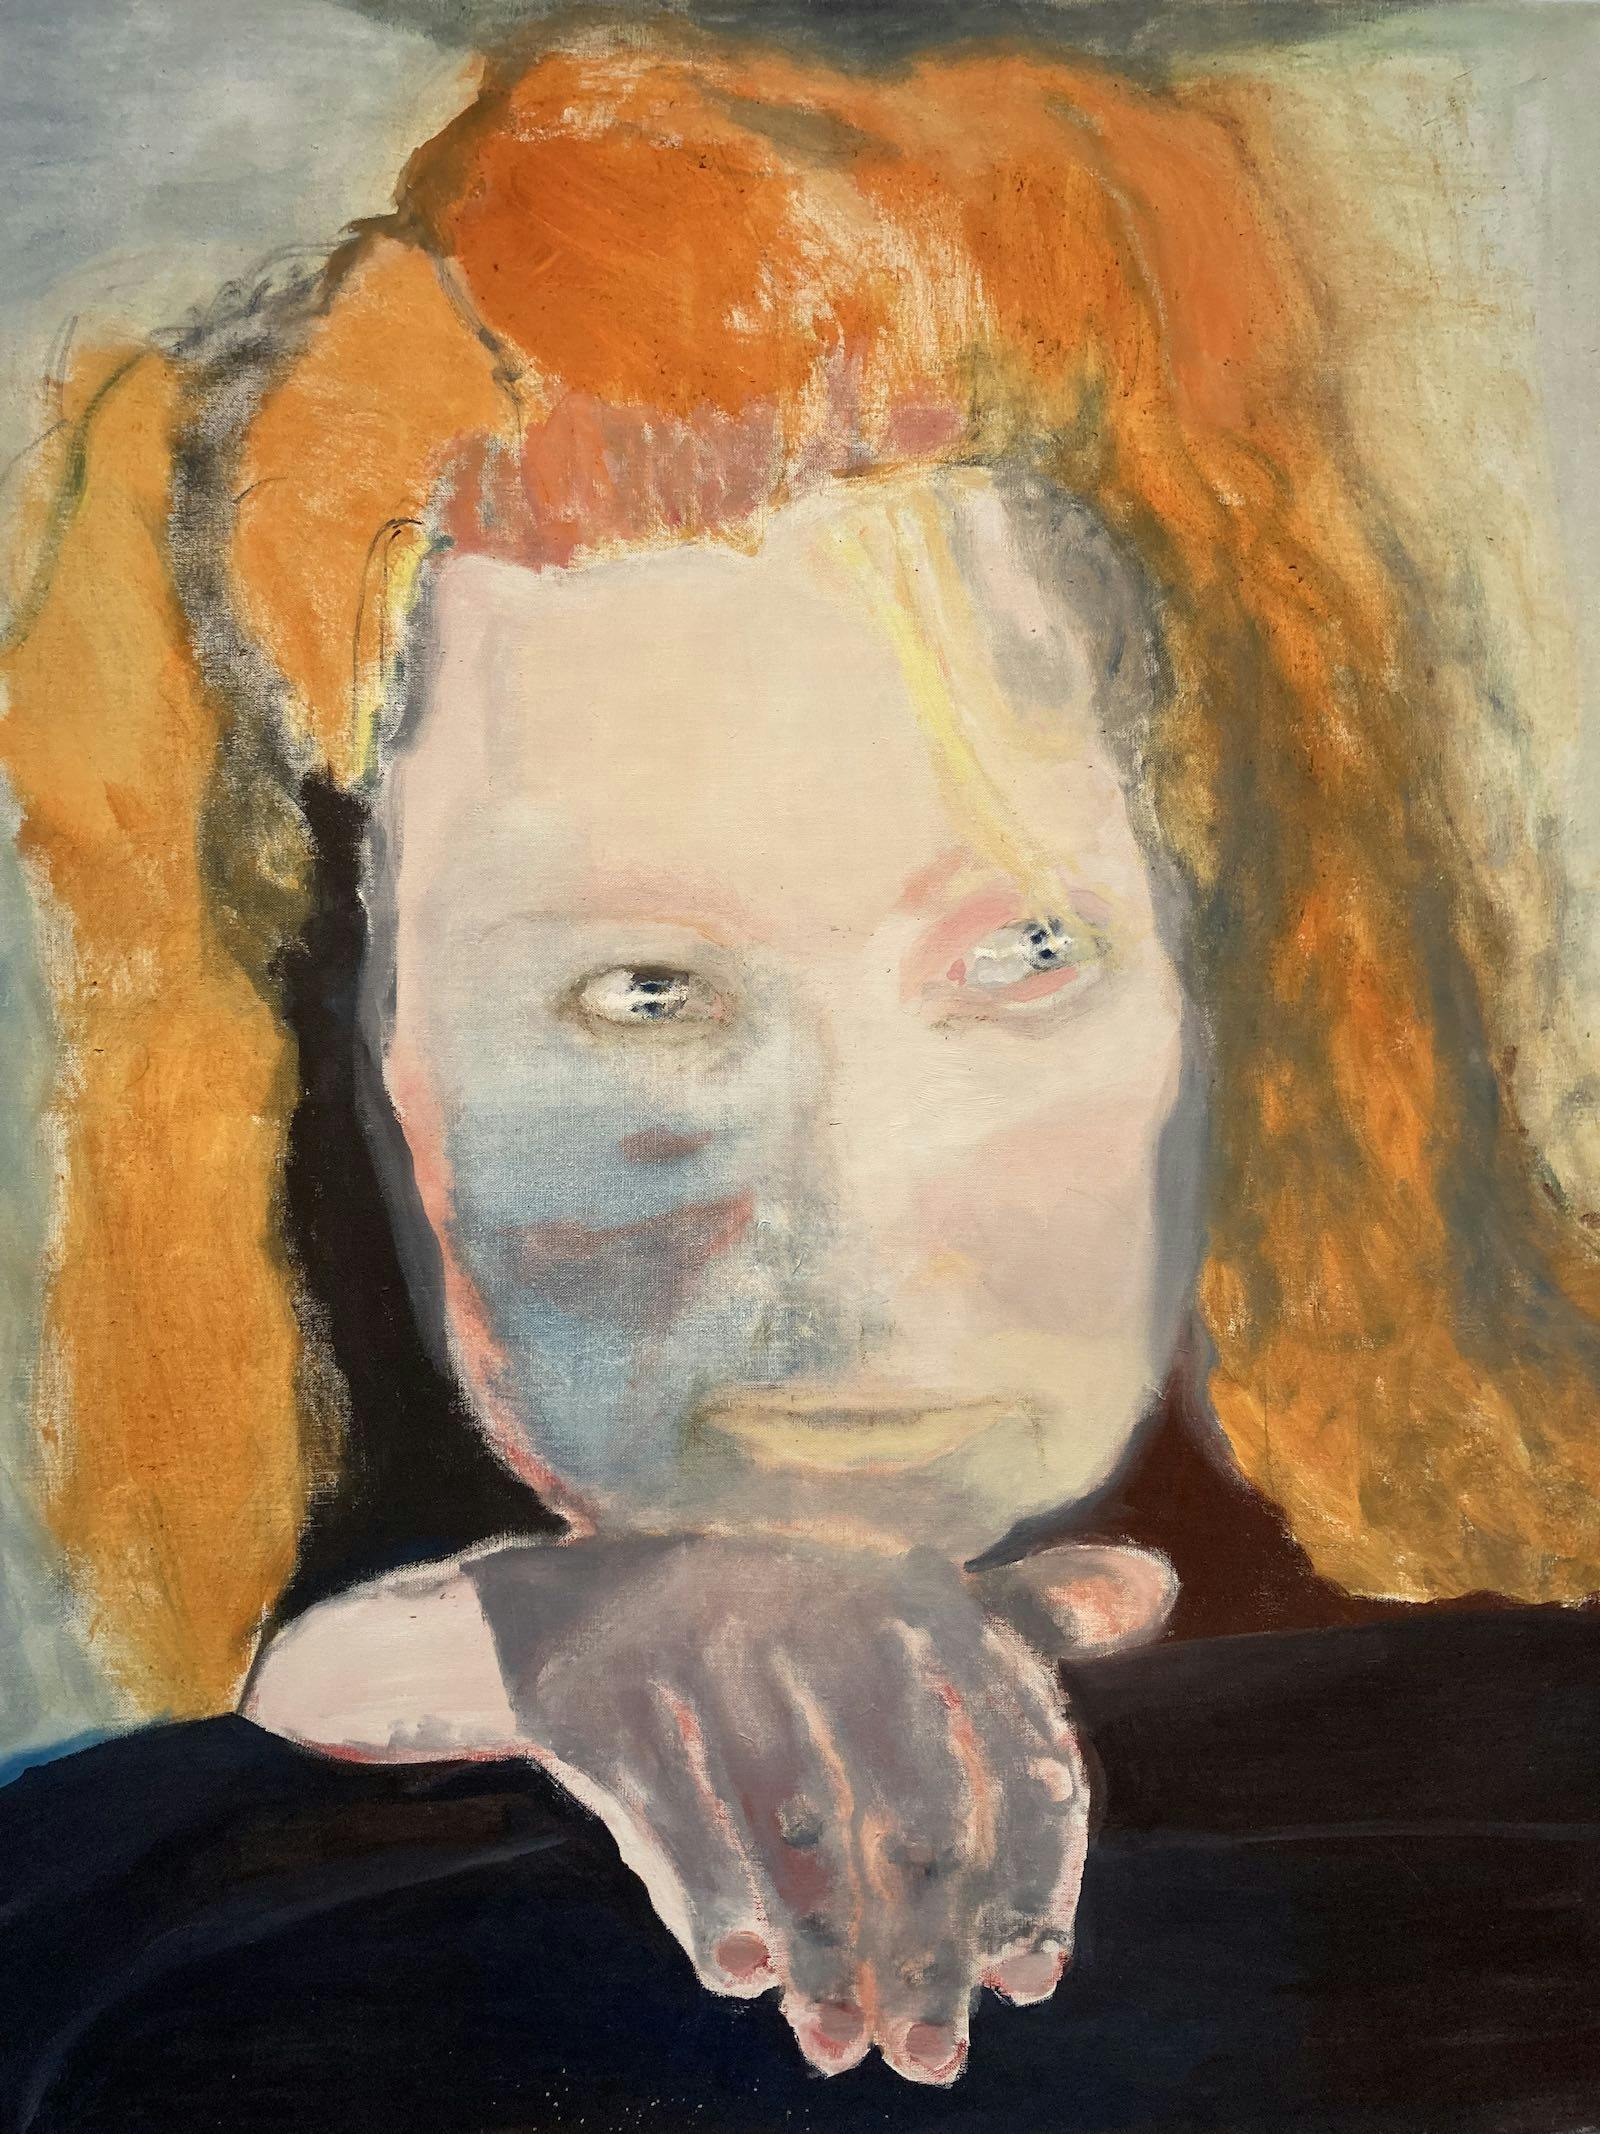 olieverfschilderij van roodharige vrouw door Marlene Dumas (Het kwaad is banaal, 1984)